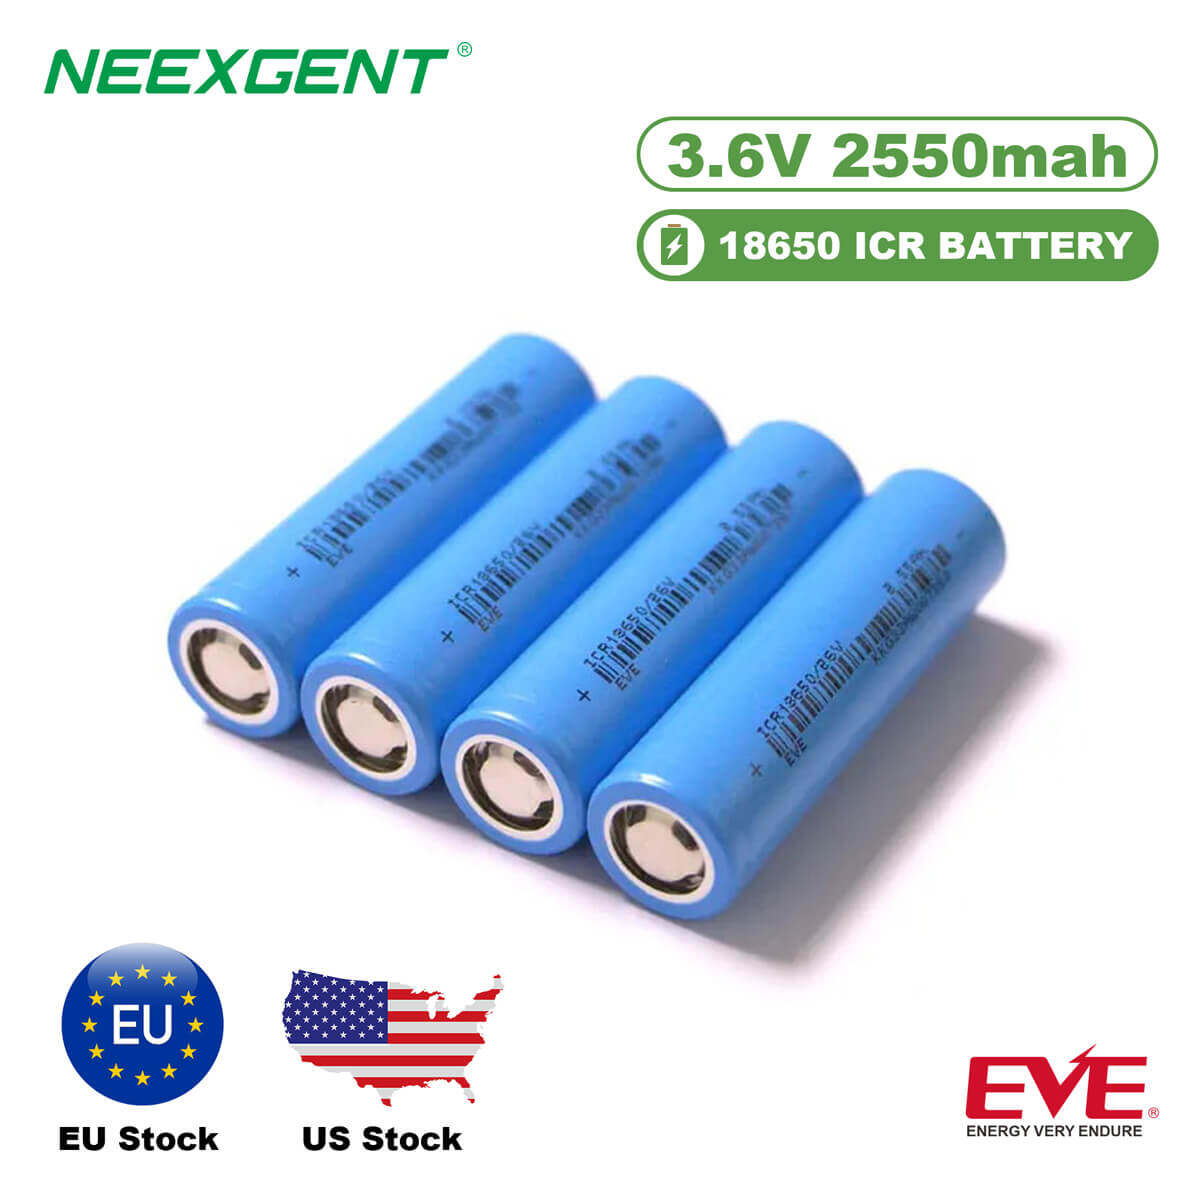 Neexgent EVE 18650 26V 2550mah 3.6V ICR Battery